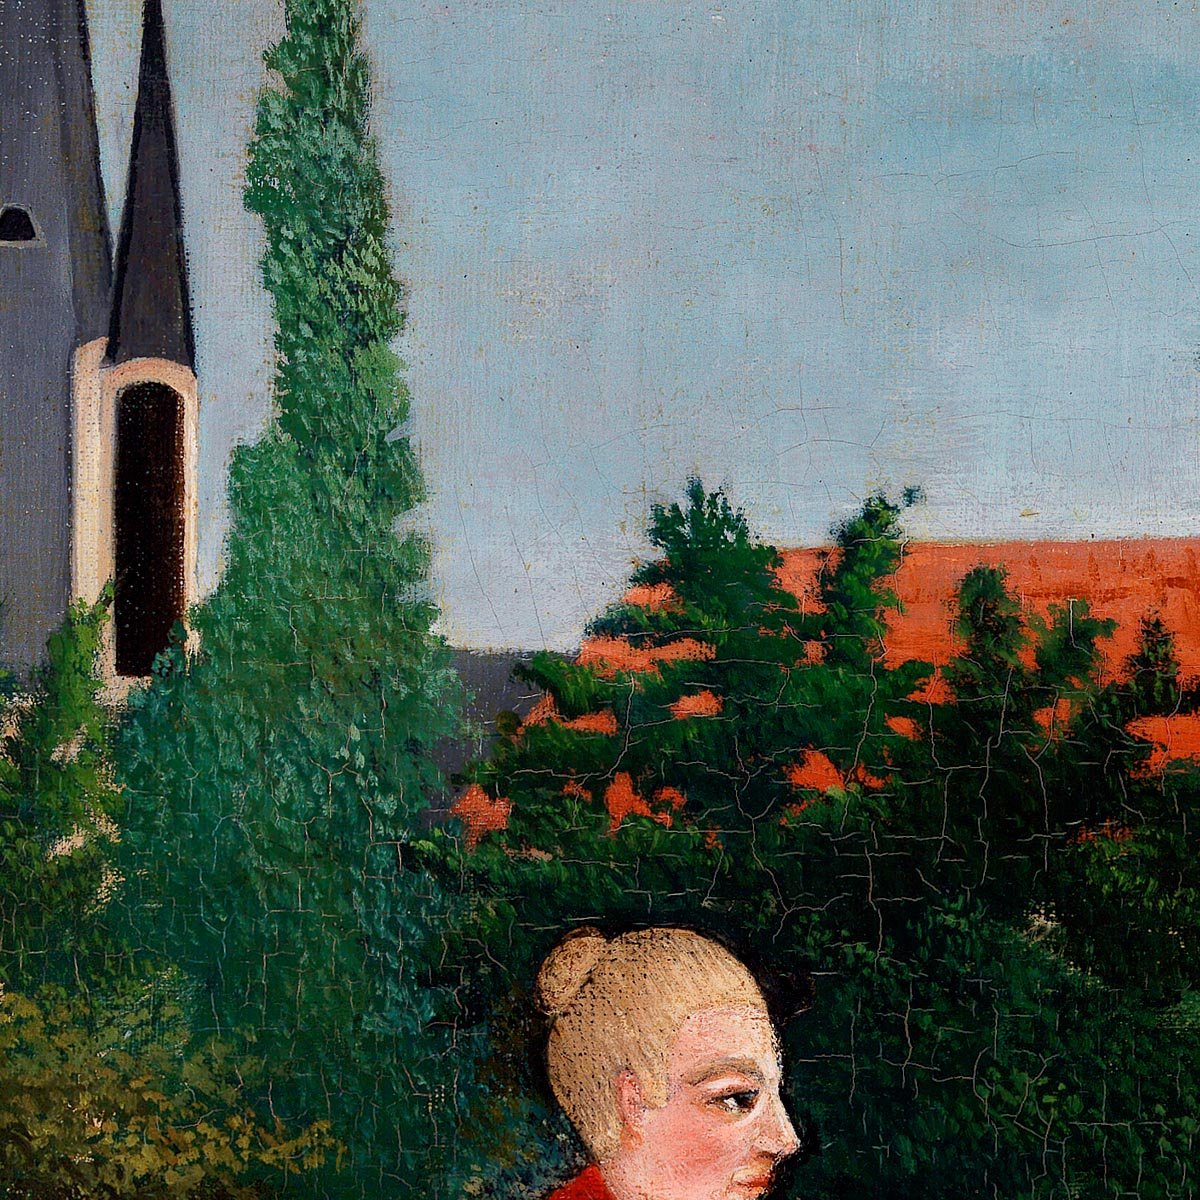 Portrait of a Woman Rousseau Exhibition Poster